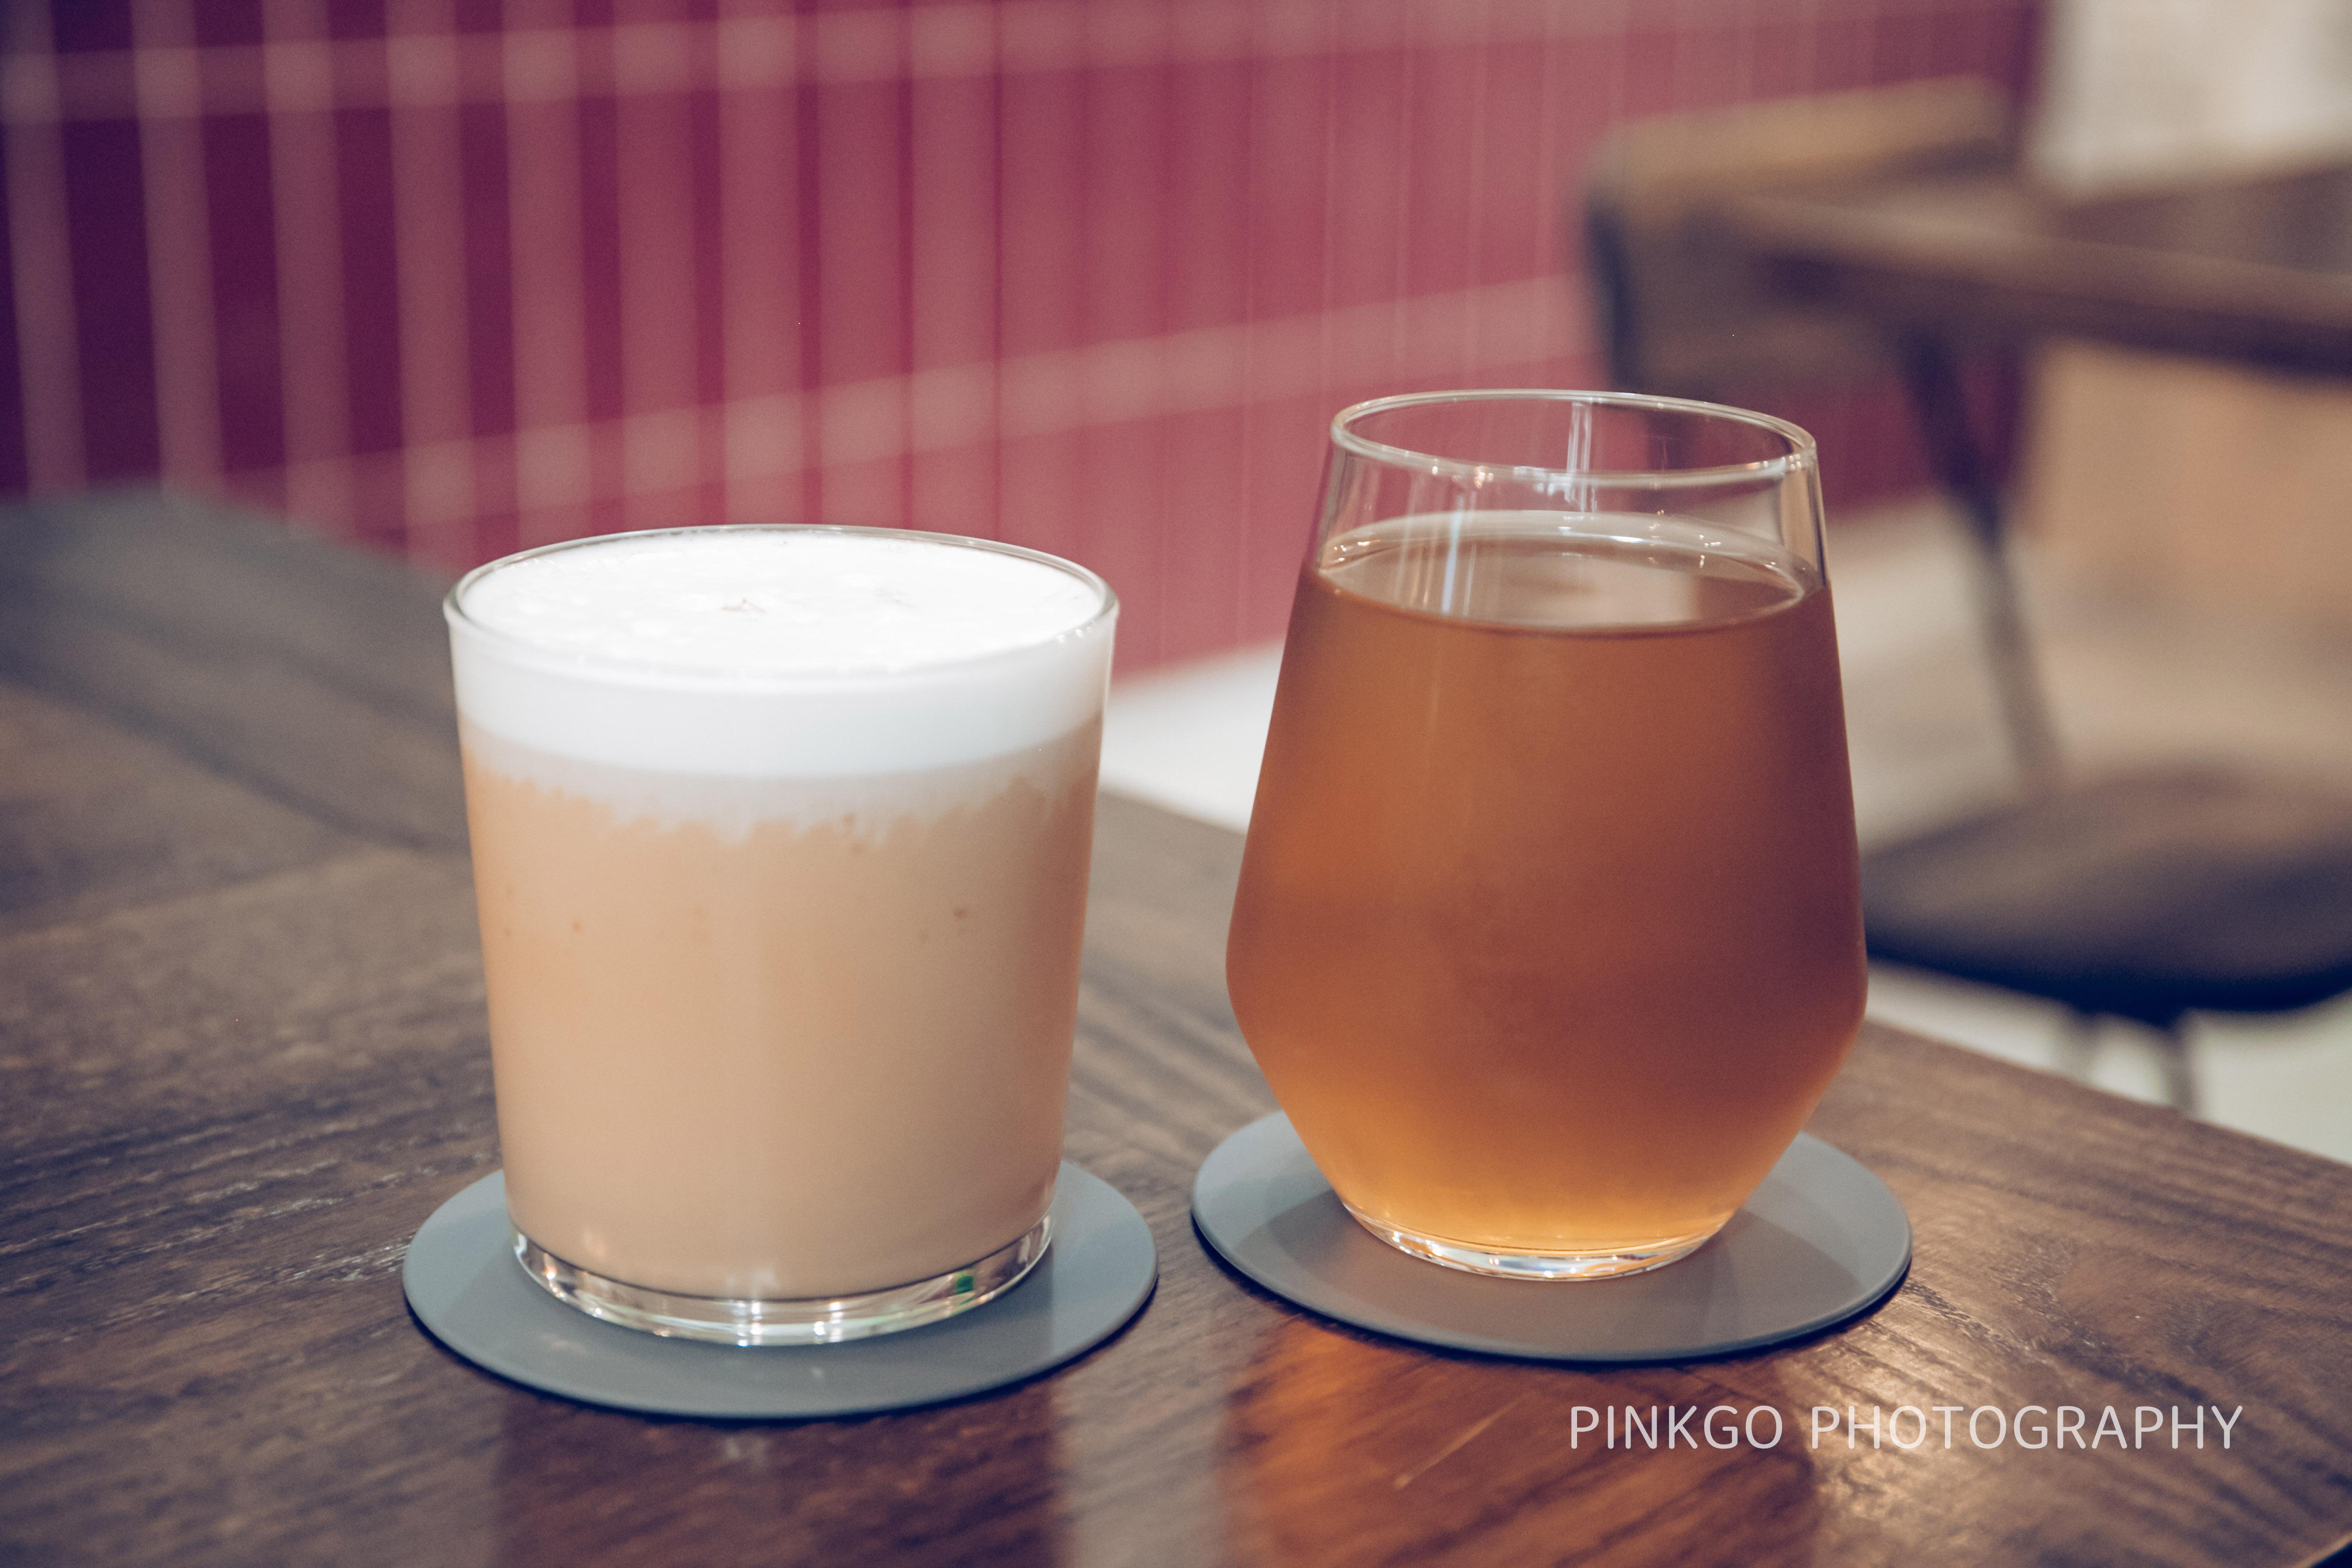 (左)阿薩姆鮮奶茶 冰 (右)借來拍照的茶(疑似薄荷茶)